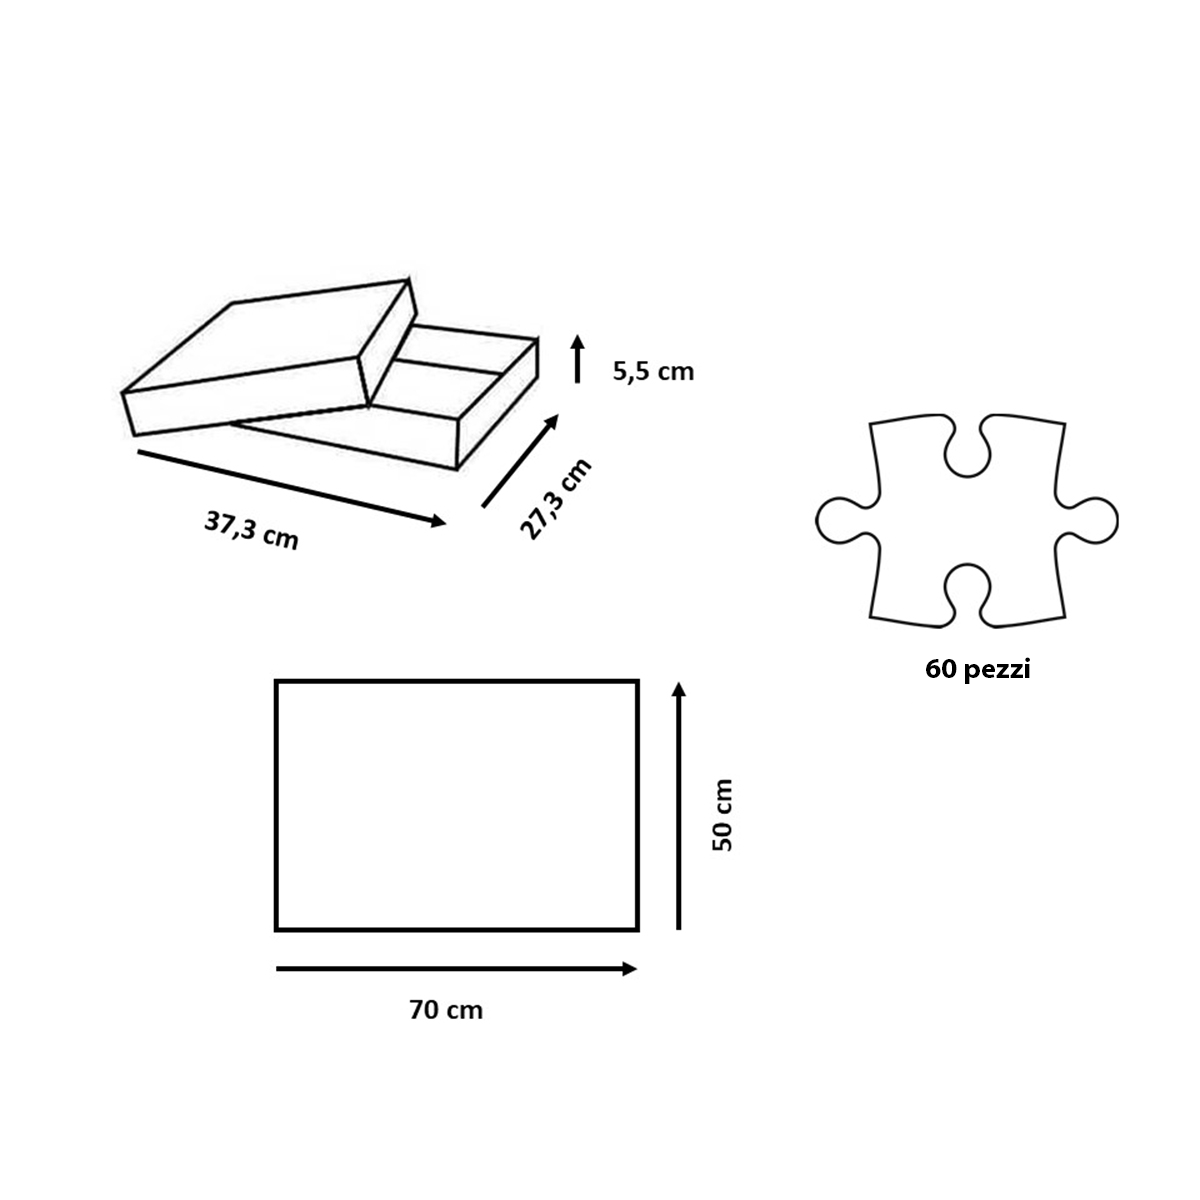 Ravensburger - puzzle 60 pezzi - formato giant – tom e jerry – per bambini a partire dai 4 anni - 03128 - RAVENSBURGER